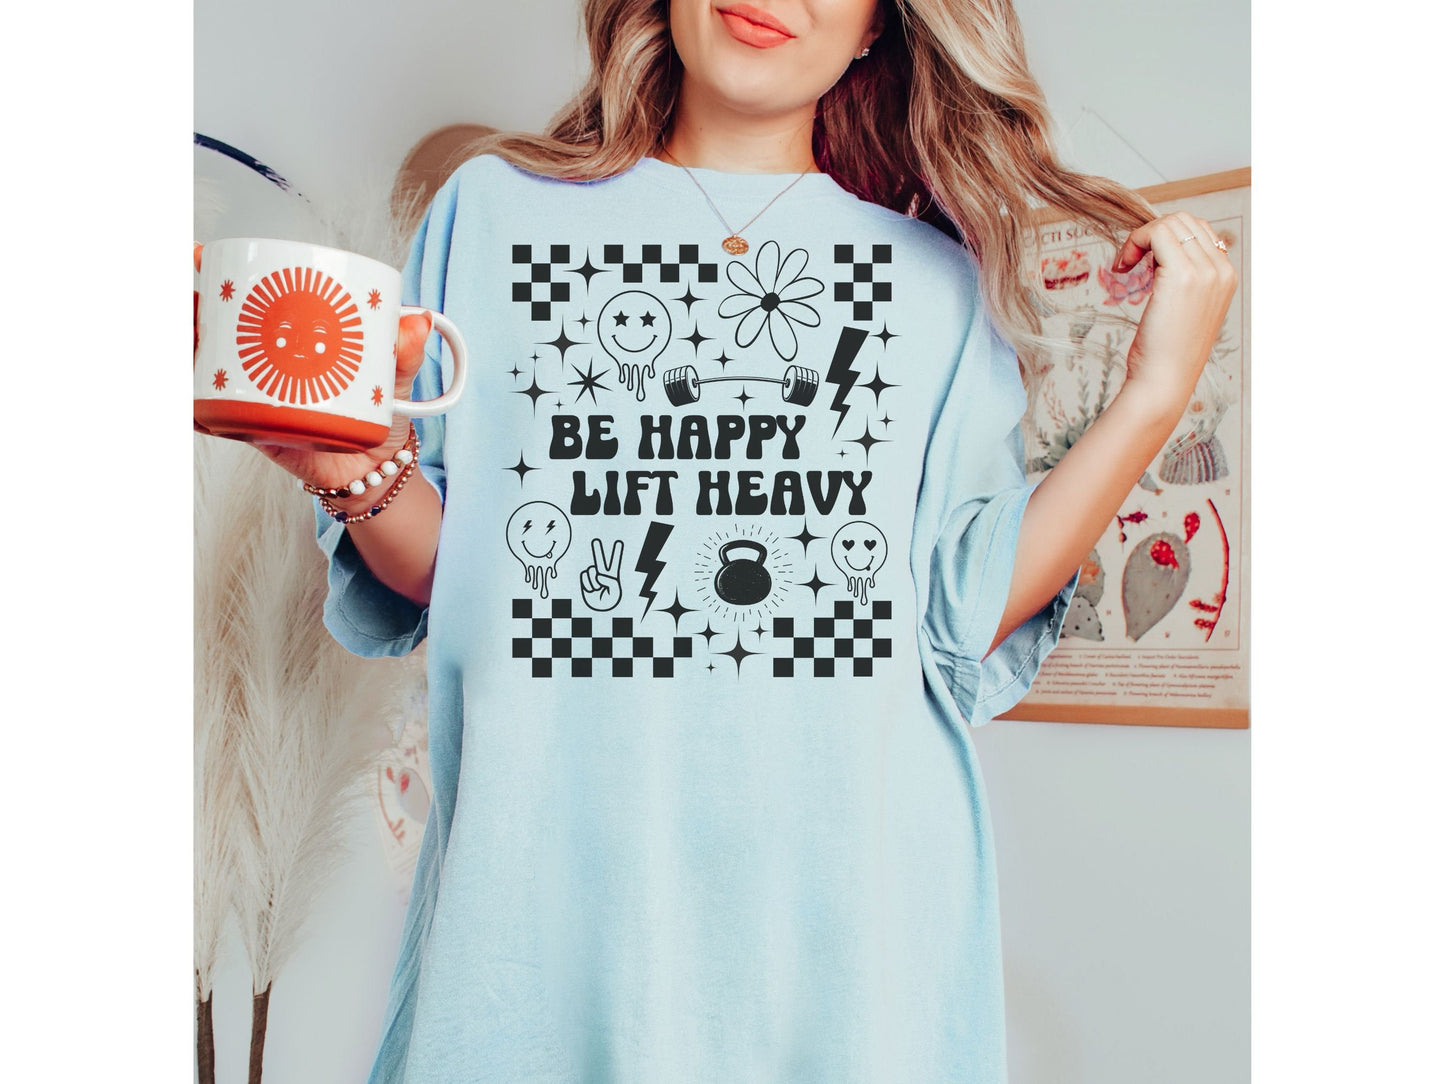 Be Happy Lift Heavy Shirt